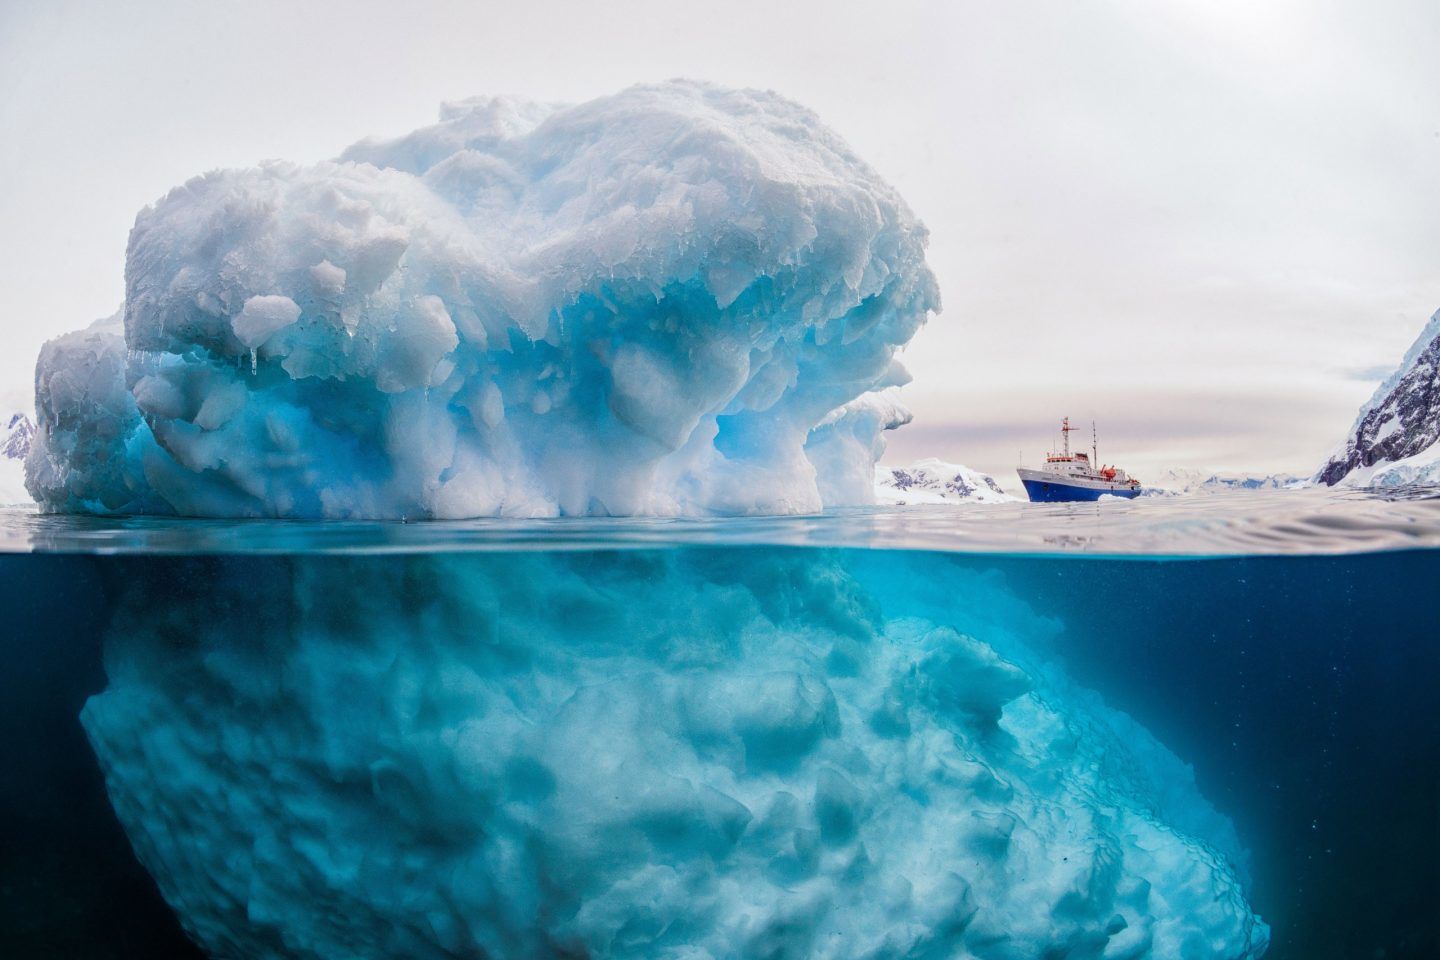 انفصال جبل جليدي ضخم عن القارة القطبية الجنوبية في مكان غير متوقع